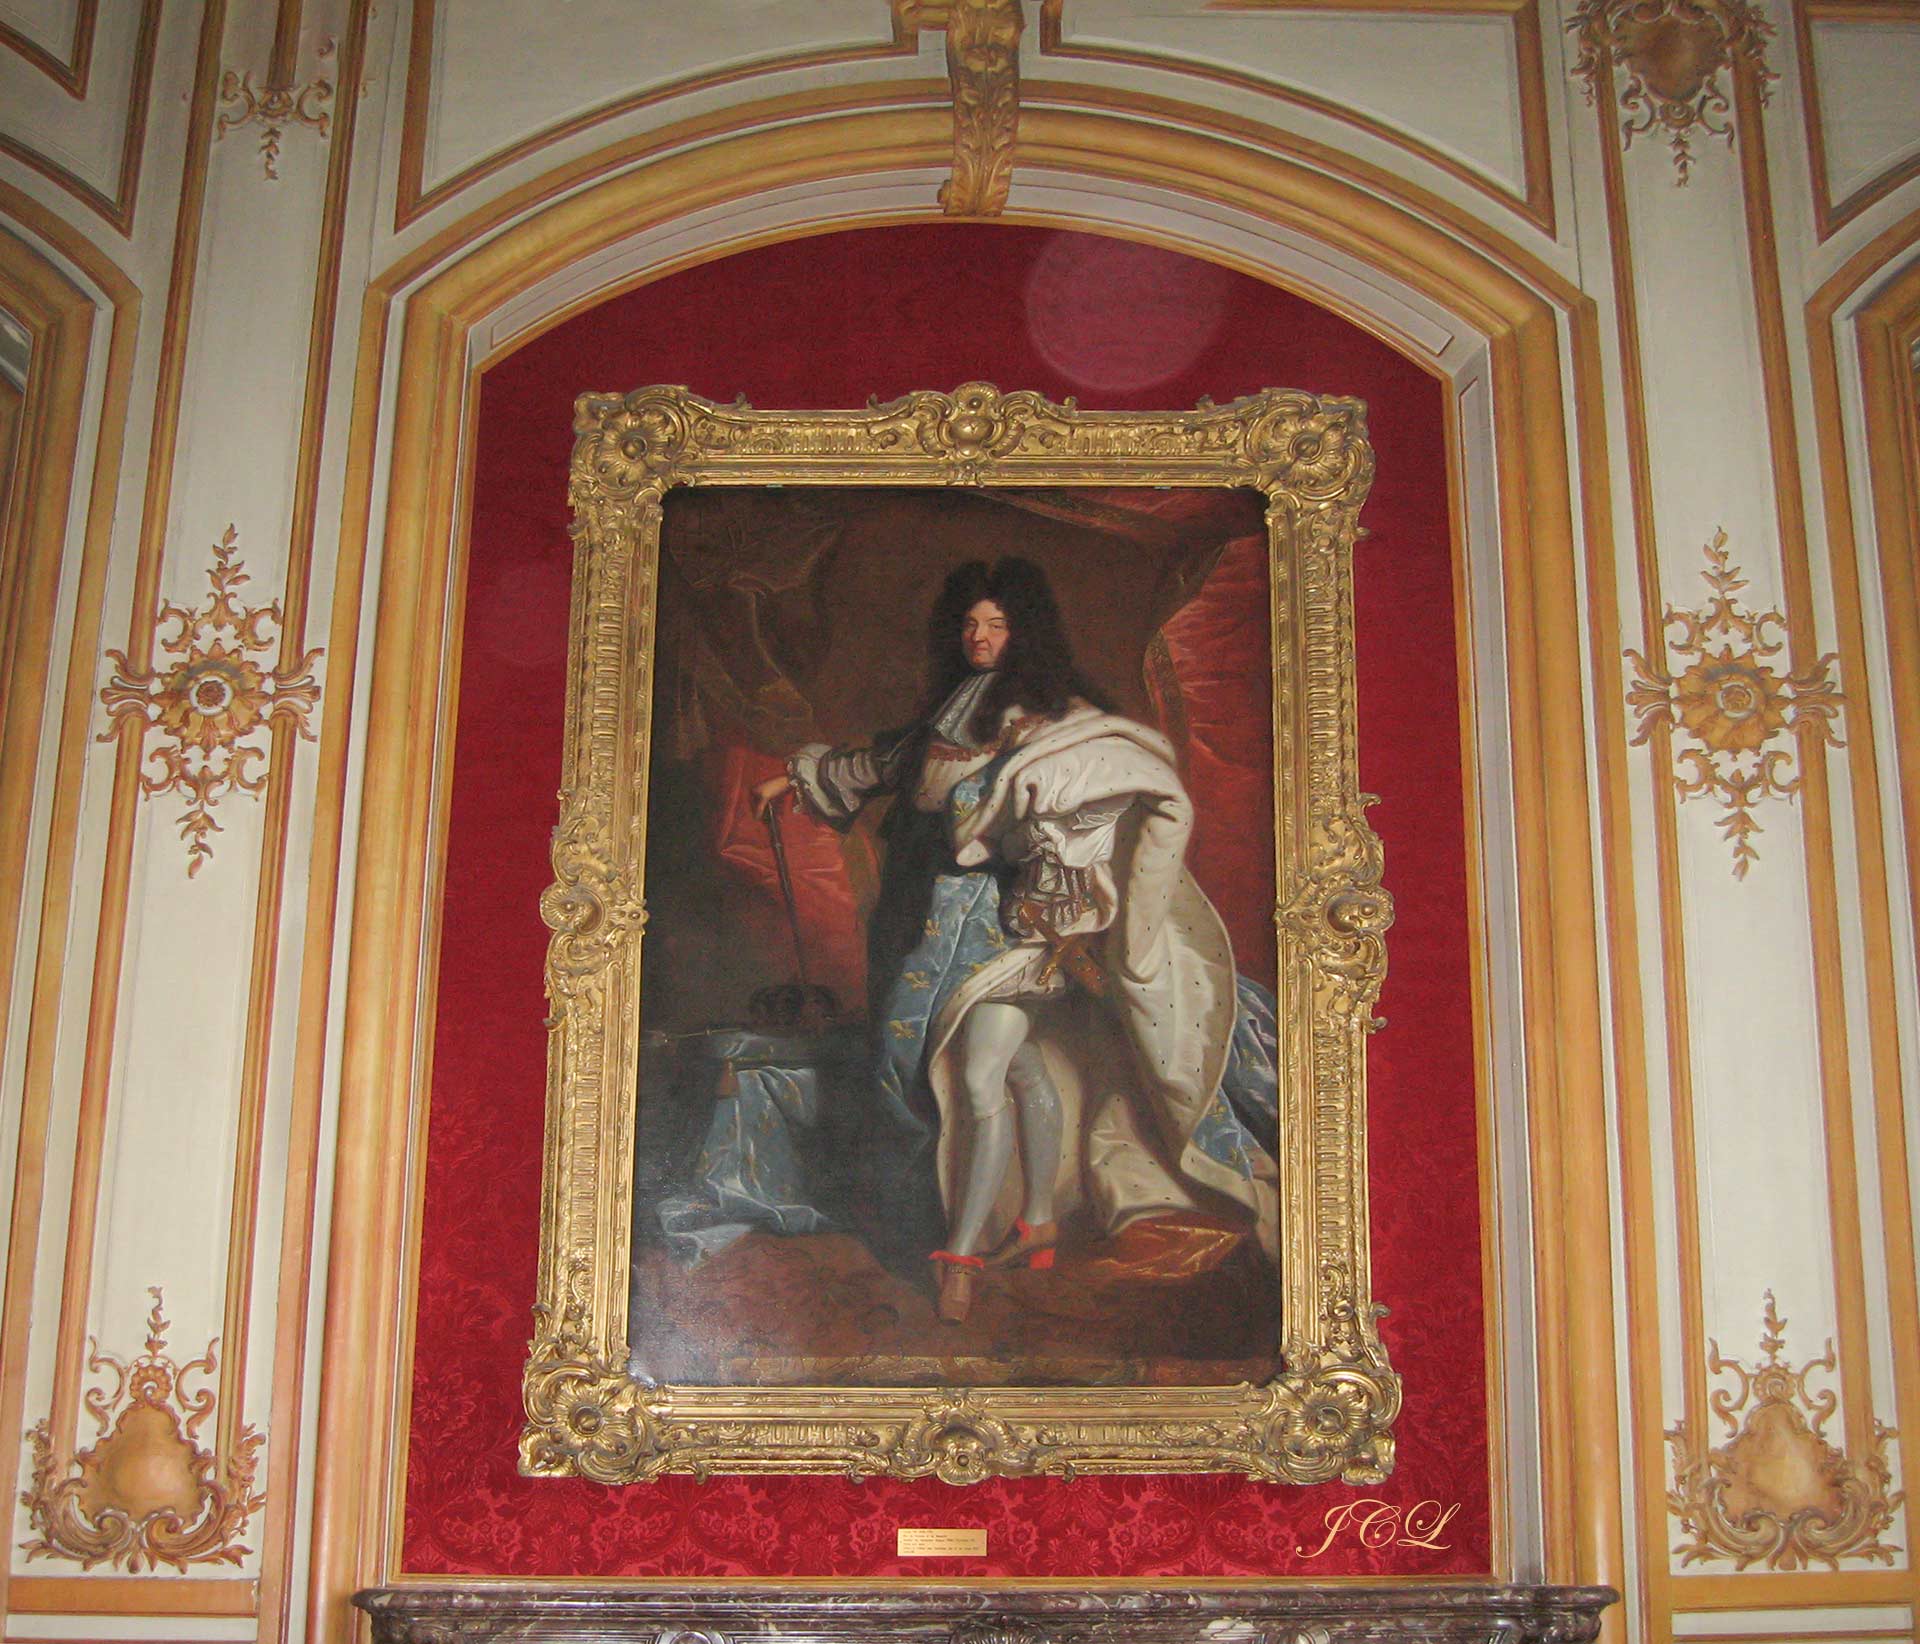 Portrait de Louis XIV exposé dans le Musée des Invalides à Paris.